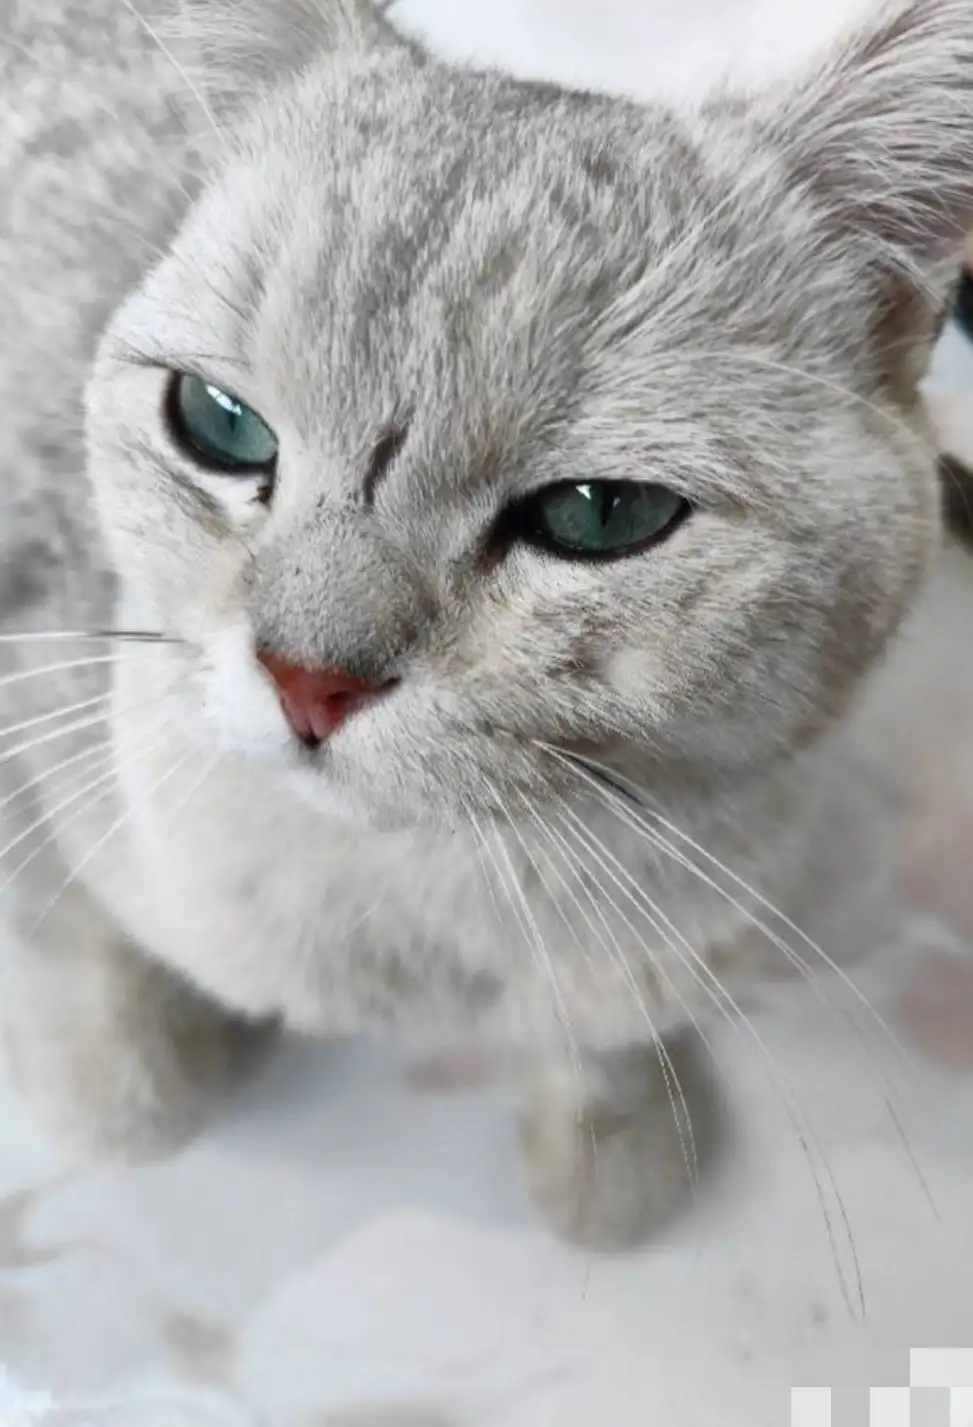 6月1日石家庄市桥西区东简良小区捡到流浪猫,宠物猫,猫咪【猫招领启示/启事】